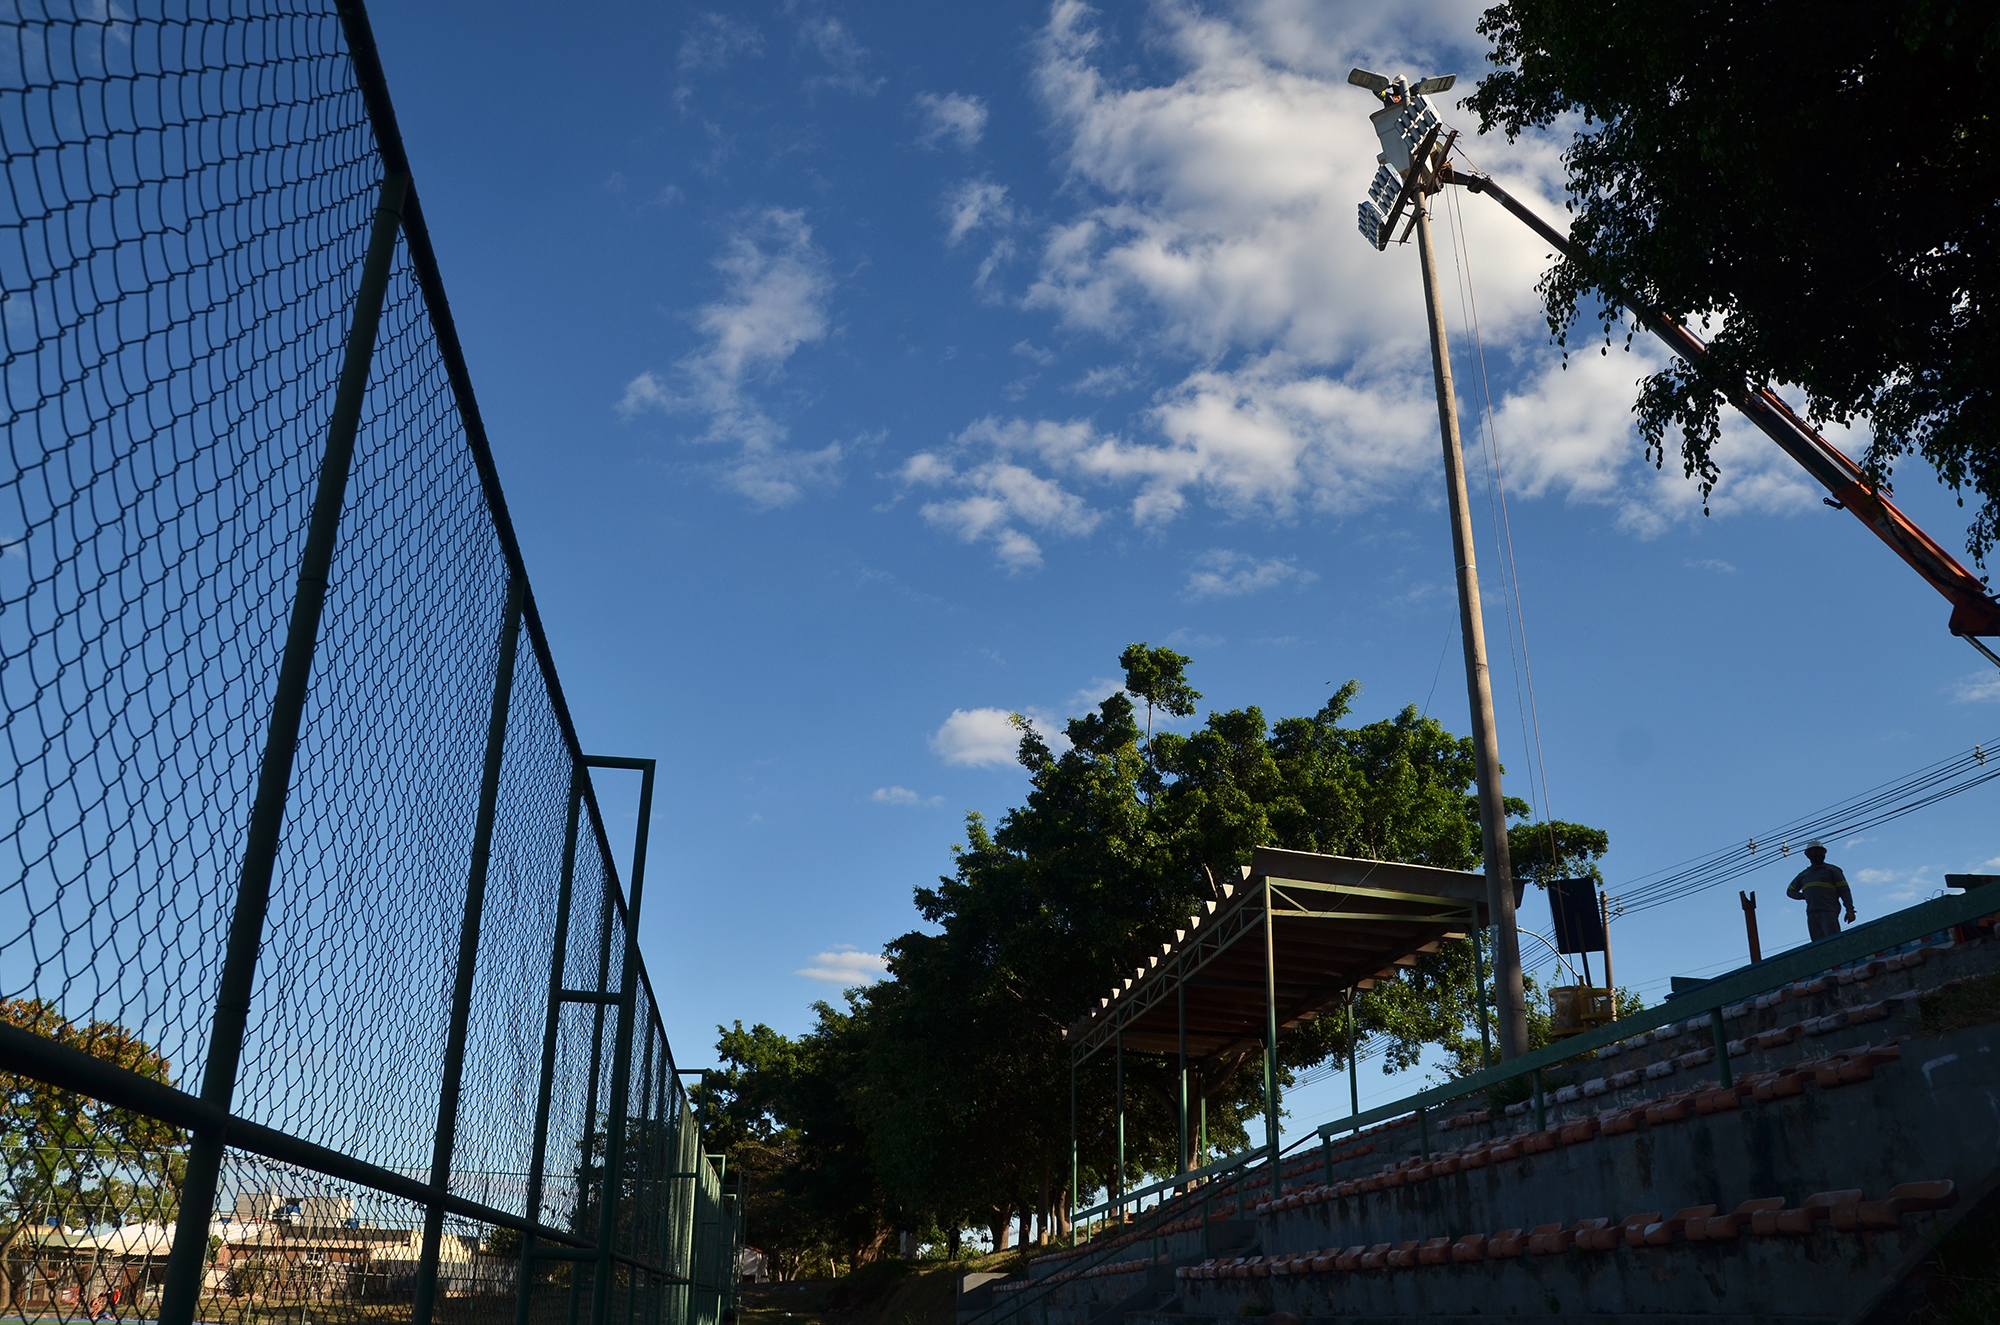 Campo de Futebol no Gama tem iluminação pública revitalizada